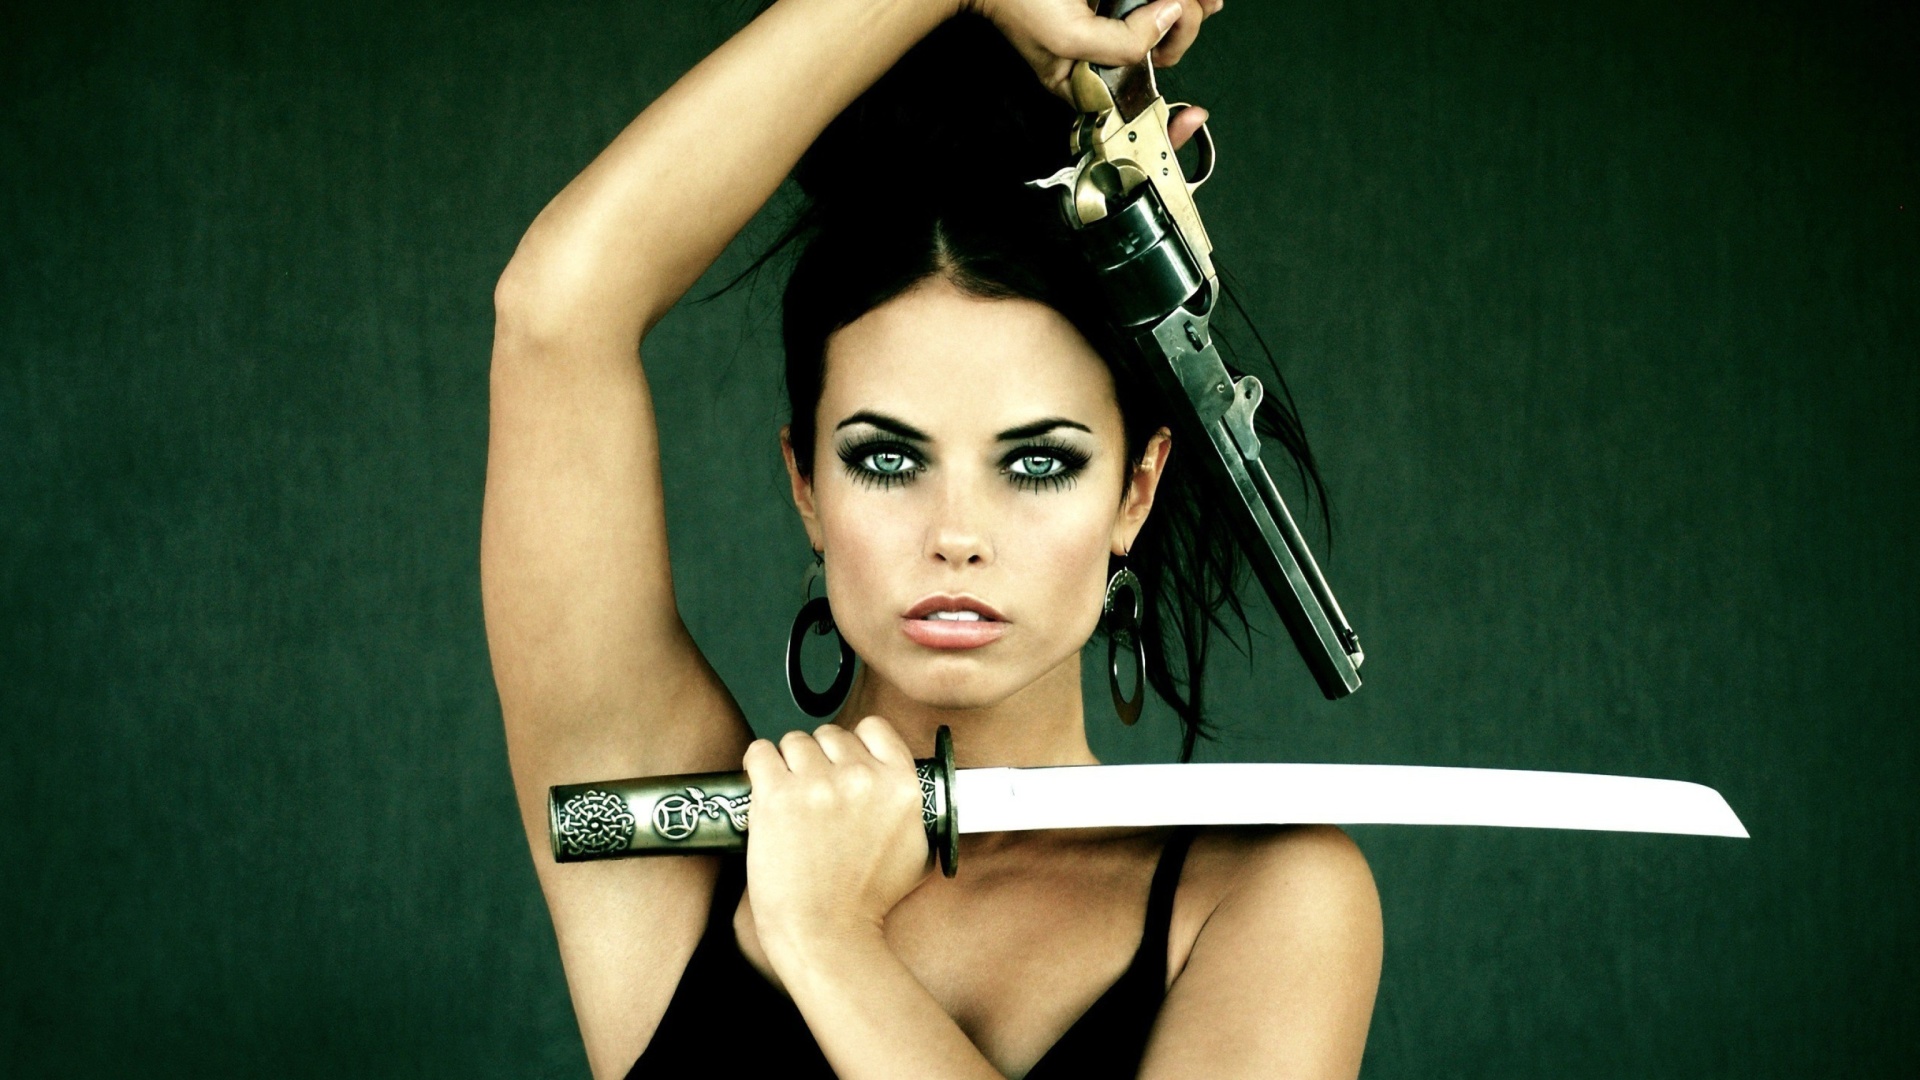 Warrior girl with swords wallpaper 1920x1080